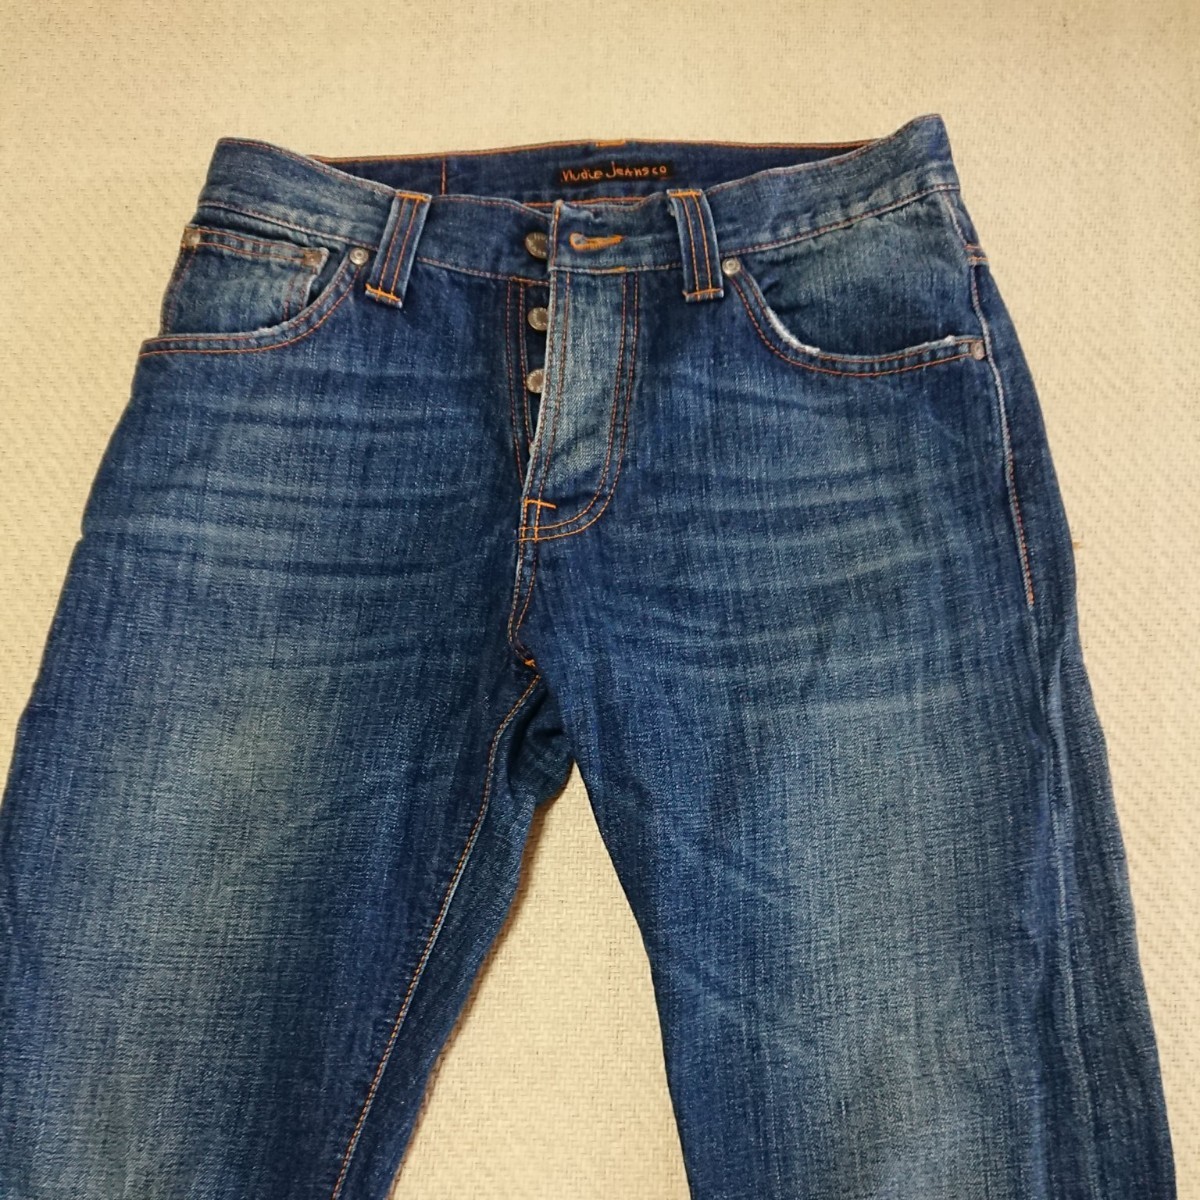 【Nudie Jeans】綿100% ストレートデニムパンツ 30×32